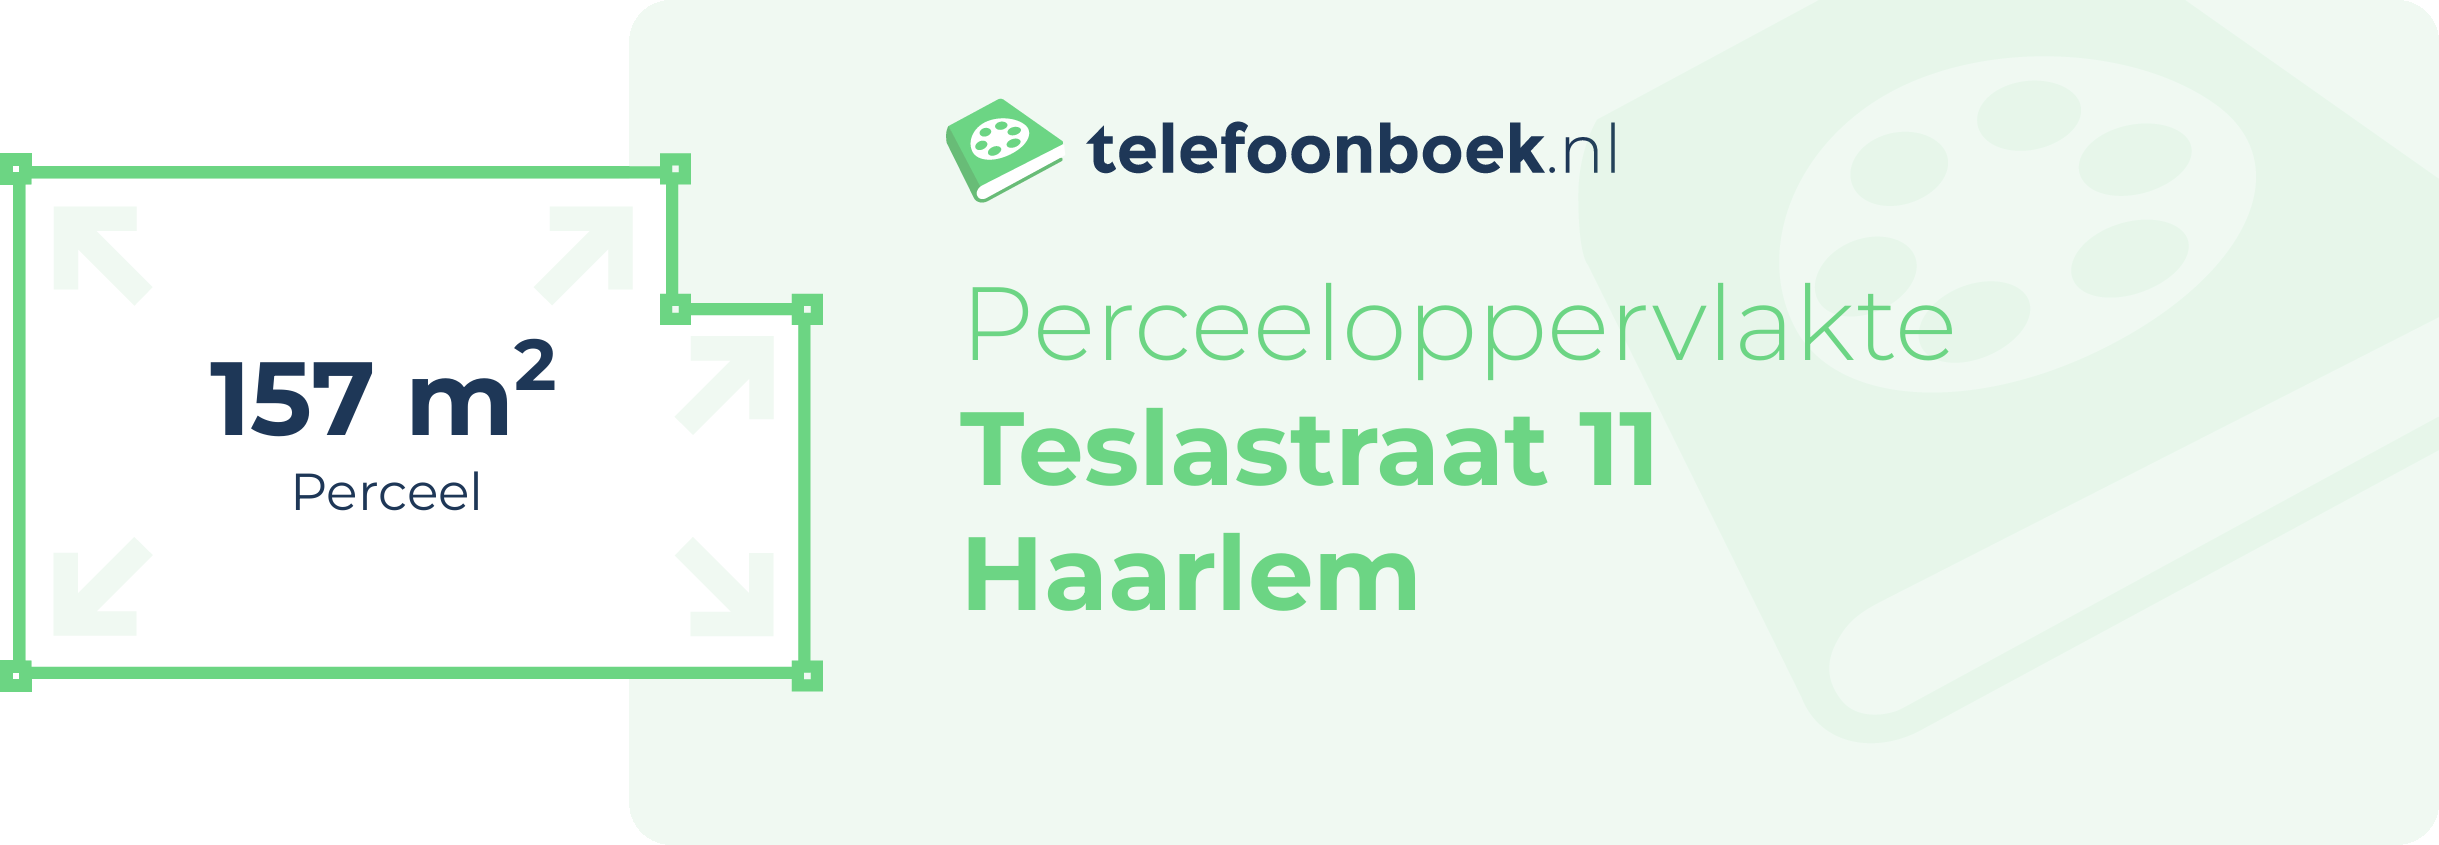 Perceeloppervlakte Teslastraat 11 Haarlem